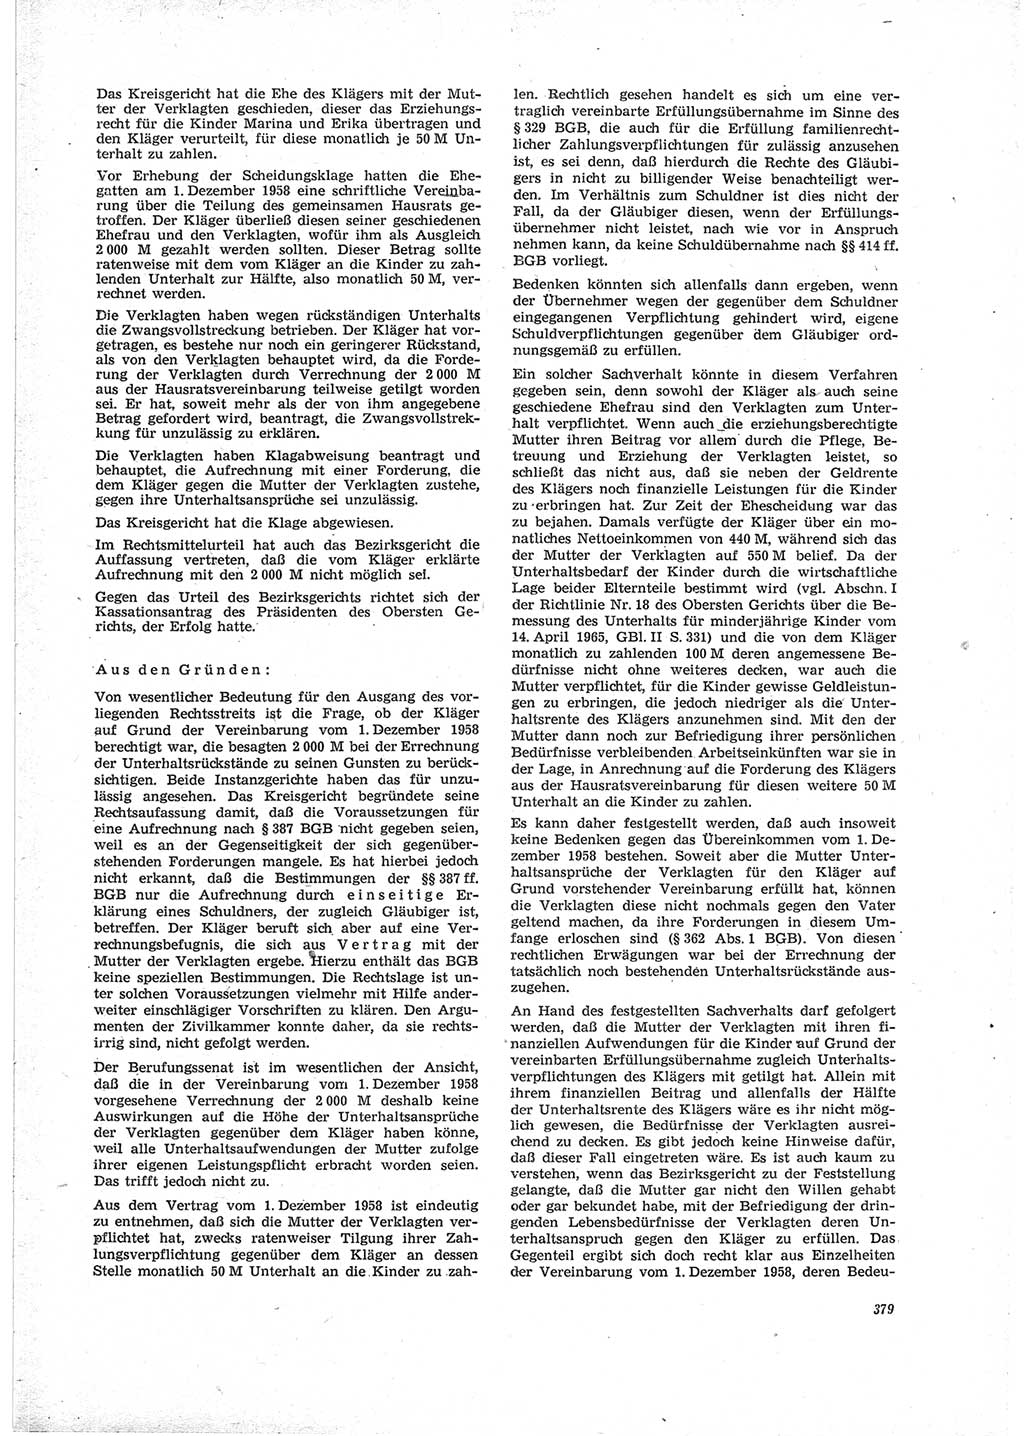 Neue Justiz (NJ), Zeitschrift für Recht und Rechtswissenschaft [Deutsche Demokratische Republik (DDR)], 23. Jahrgang 1969, Seite 379 (NJ DDR 1969, S. 379)